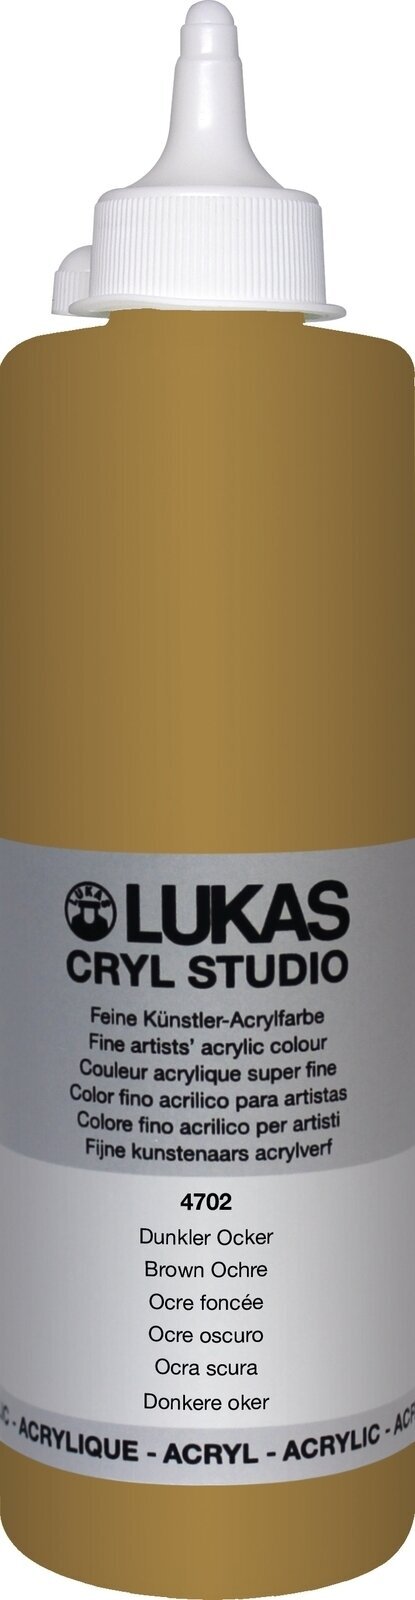 Peinture acrylique Lukas Cryl Studio Acrylic Paint Plastic Bottle Peinture acrylique Brown Ochre 500 ml 1 pc